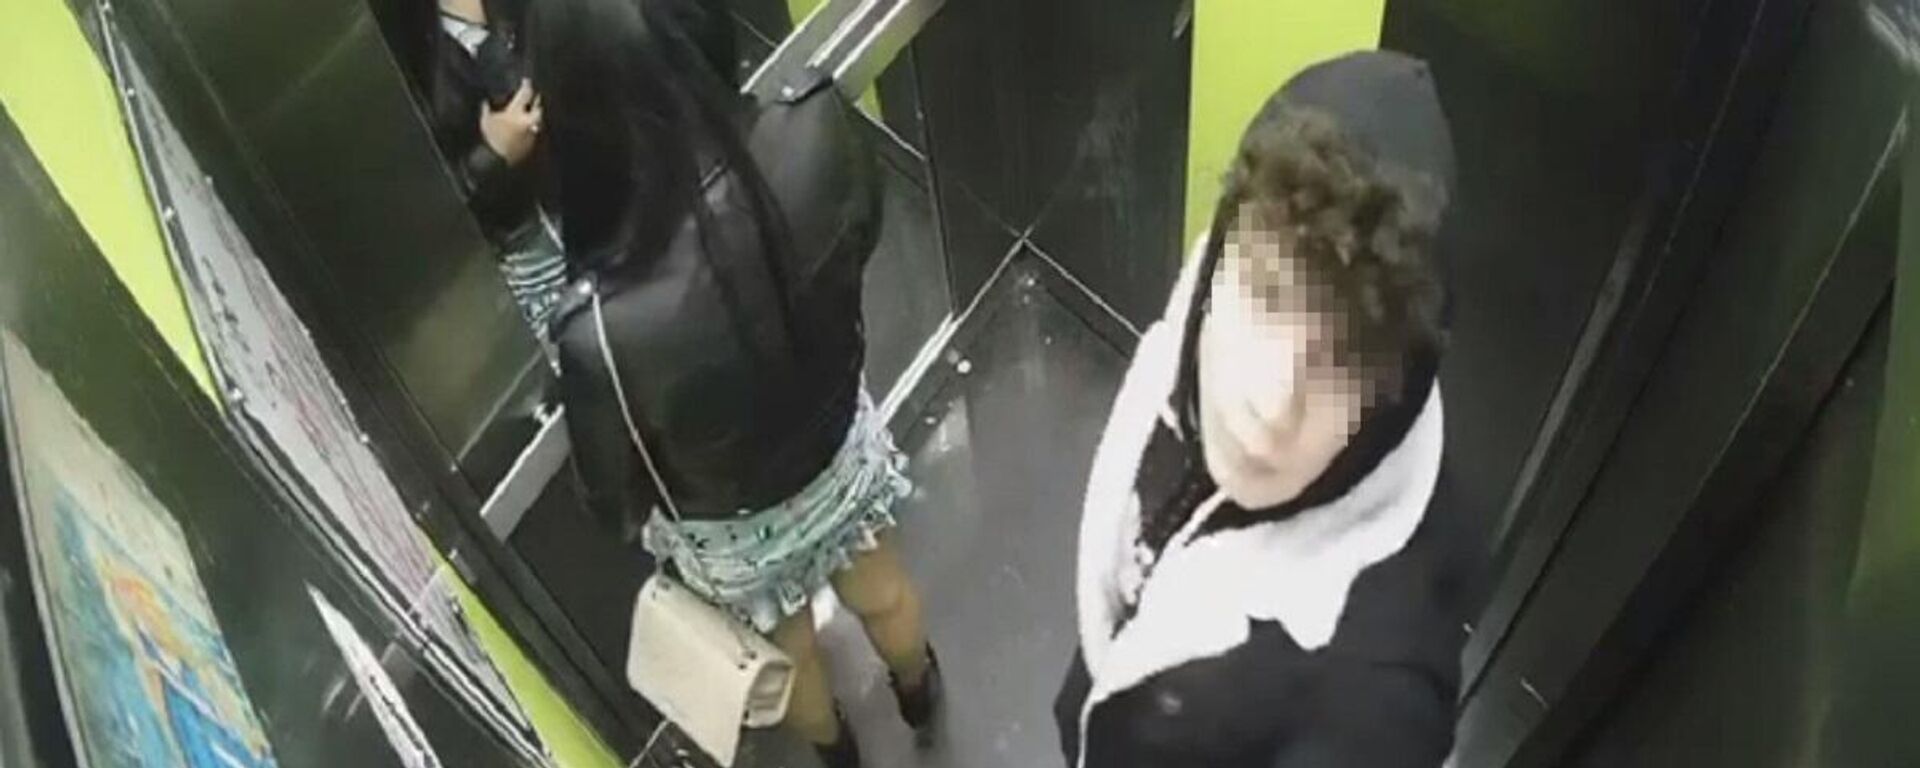 İstanbul'da bir sitede asansörde bir kadına cinsel saldırı girişiminde bulunan yabancı uyruklu zanlı, polis ekiplerinin takibi sonucu yakalandı. - Sputnik Türkiye, 1920, 16.12.2021